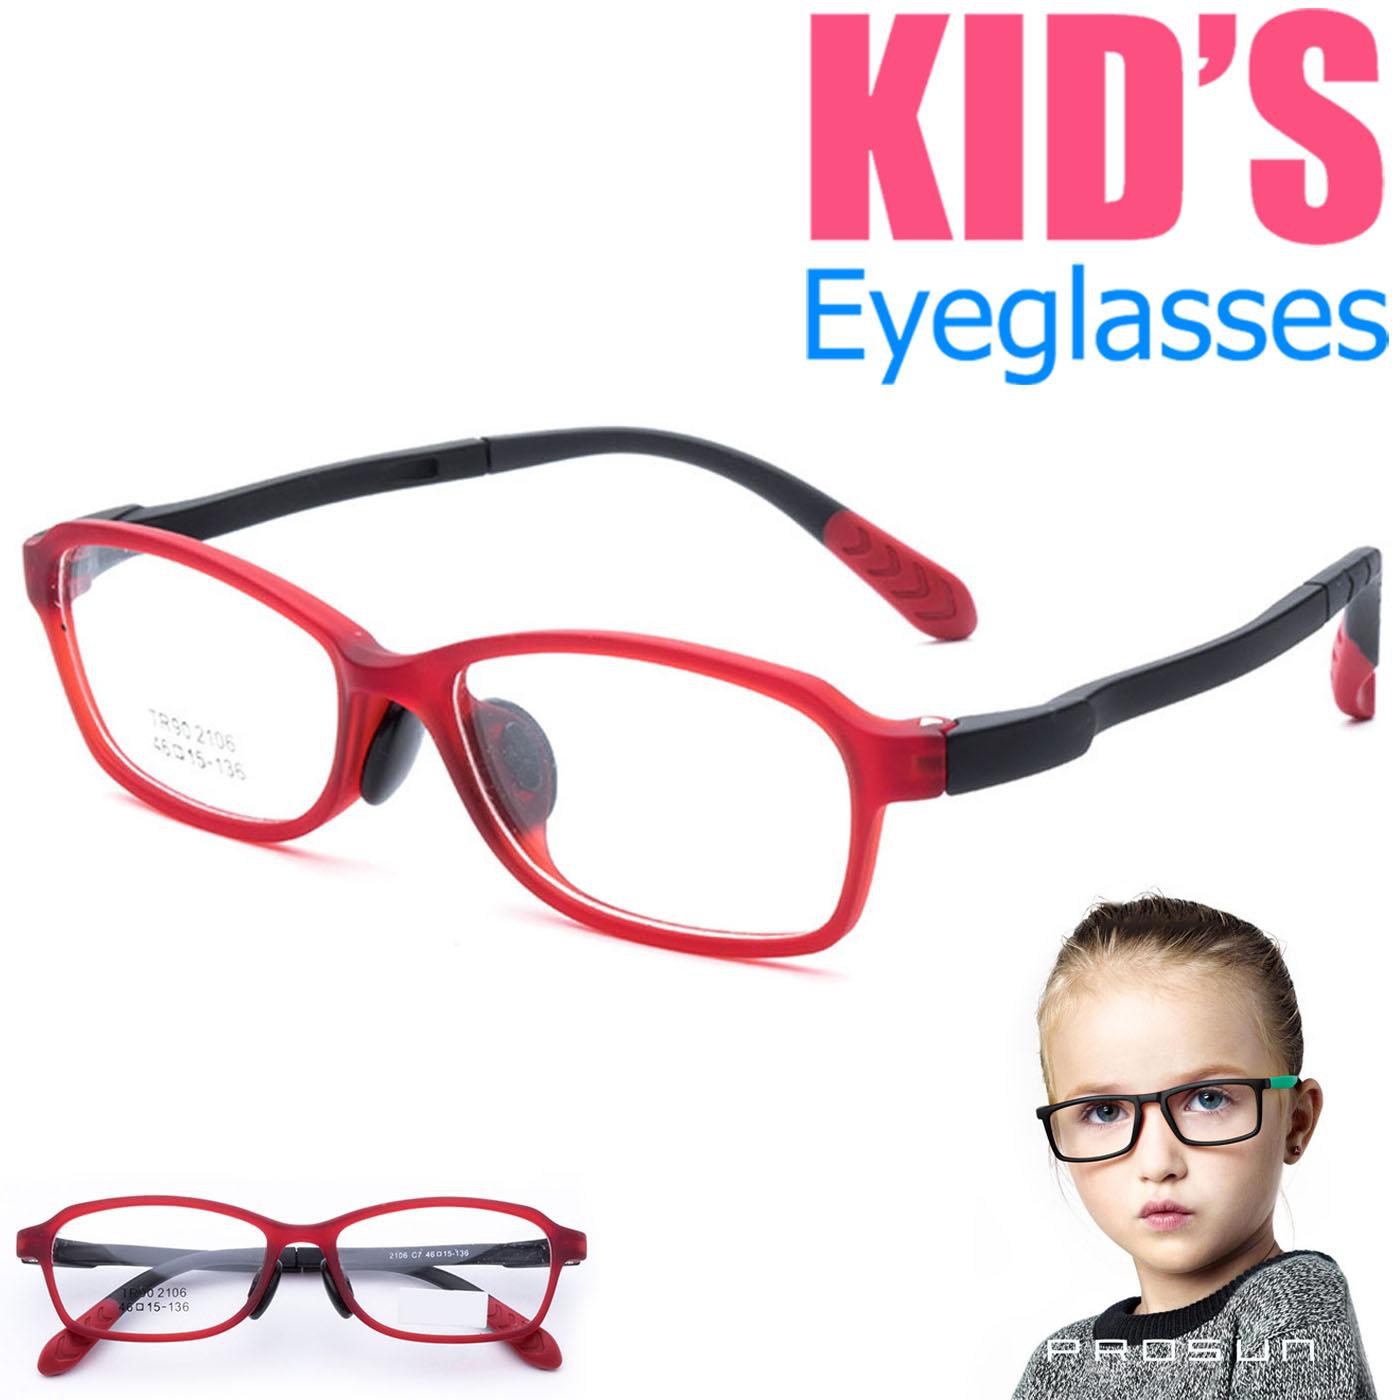 แว่นตาเกาหลีเด็ก Fashion Korea Children แว่นตาเด็ก รุ่น 2106 C-7 สีแดง กรอบแว่นตาเด็ก Rectangle ทรงสี่เหลี่ยมผืนผ้า Eyeglass baby frame ( สำหรับตัดเลนส์ ) วัสดุ TR-90 เบาและยืดหยุนได้สูง ขาข้อต่อ Kid eyewear Glasses